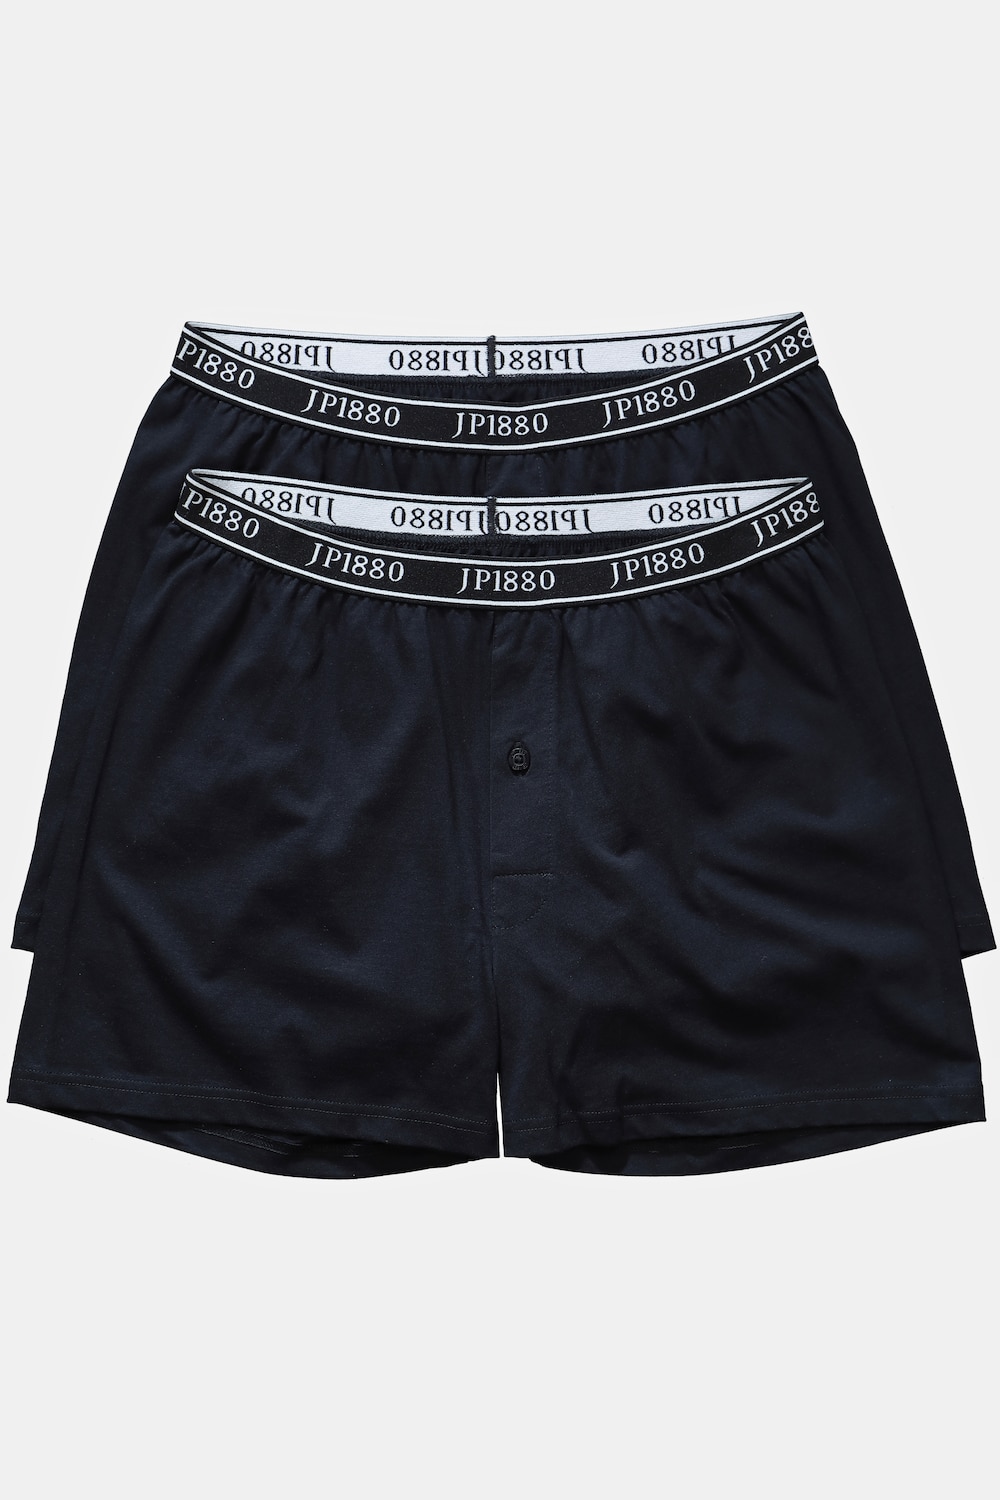 grandes tailles boxers, hommes, noir, taille: 7, coton, jp1880